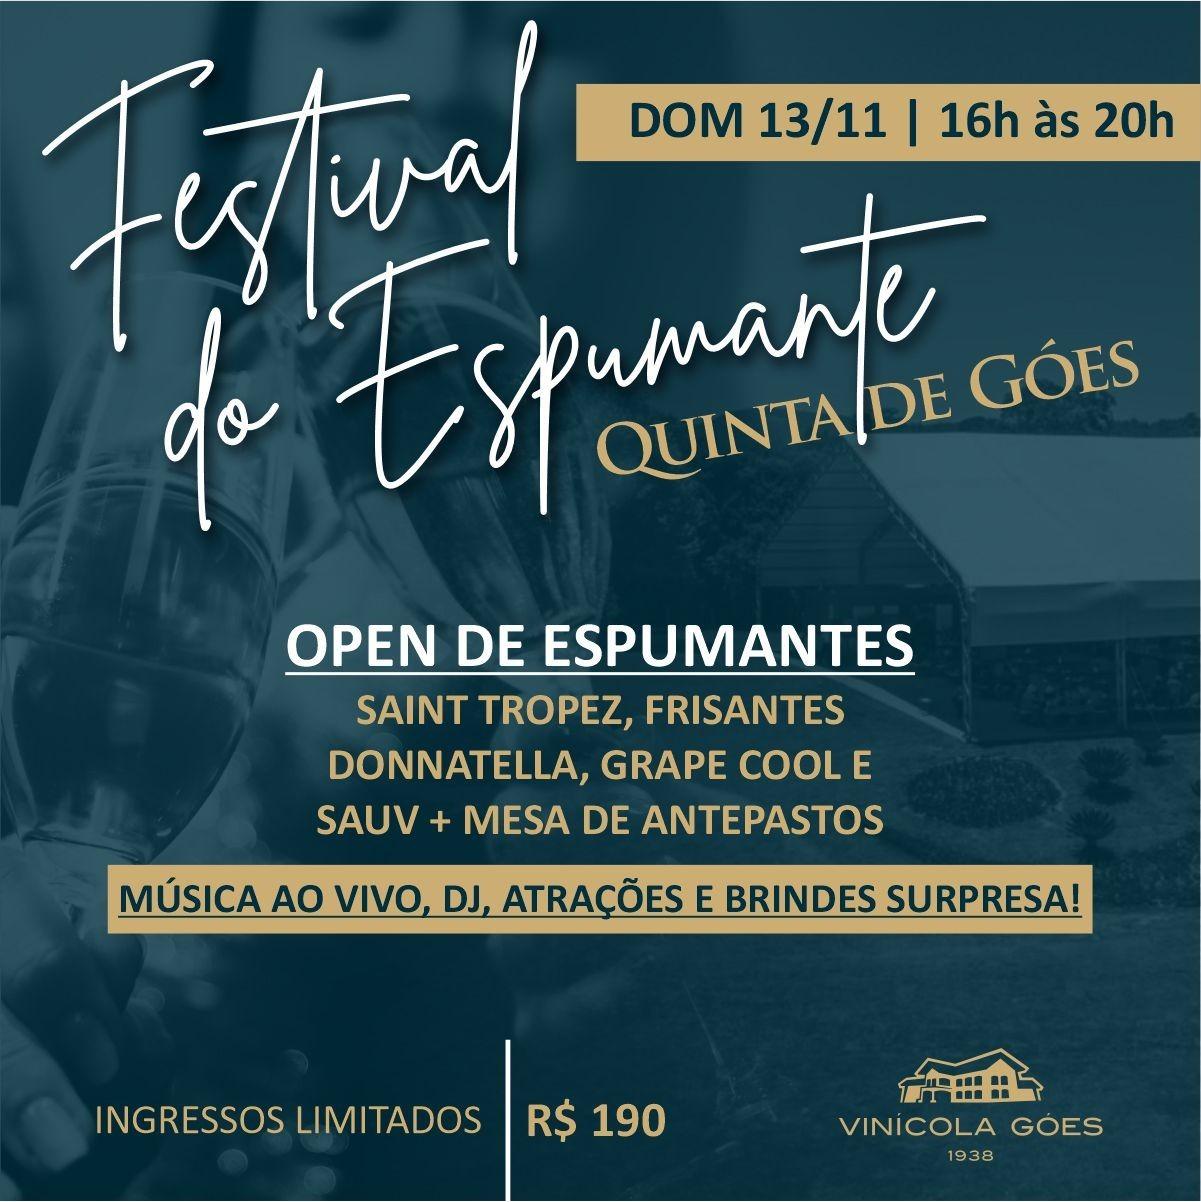 Festival do Espumante no parreiral, atração inédita na unidade Quinta de Góes